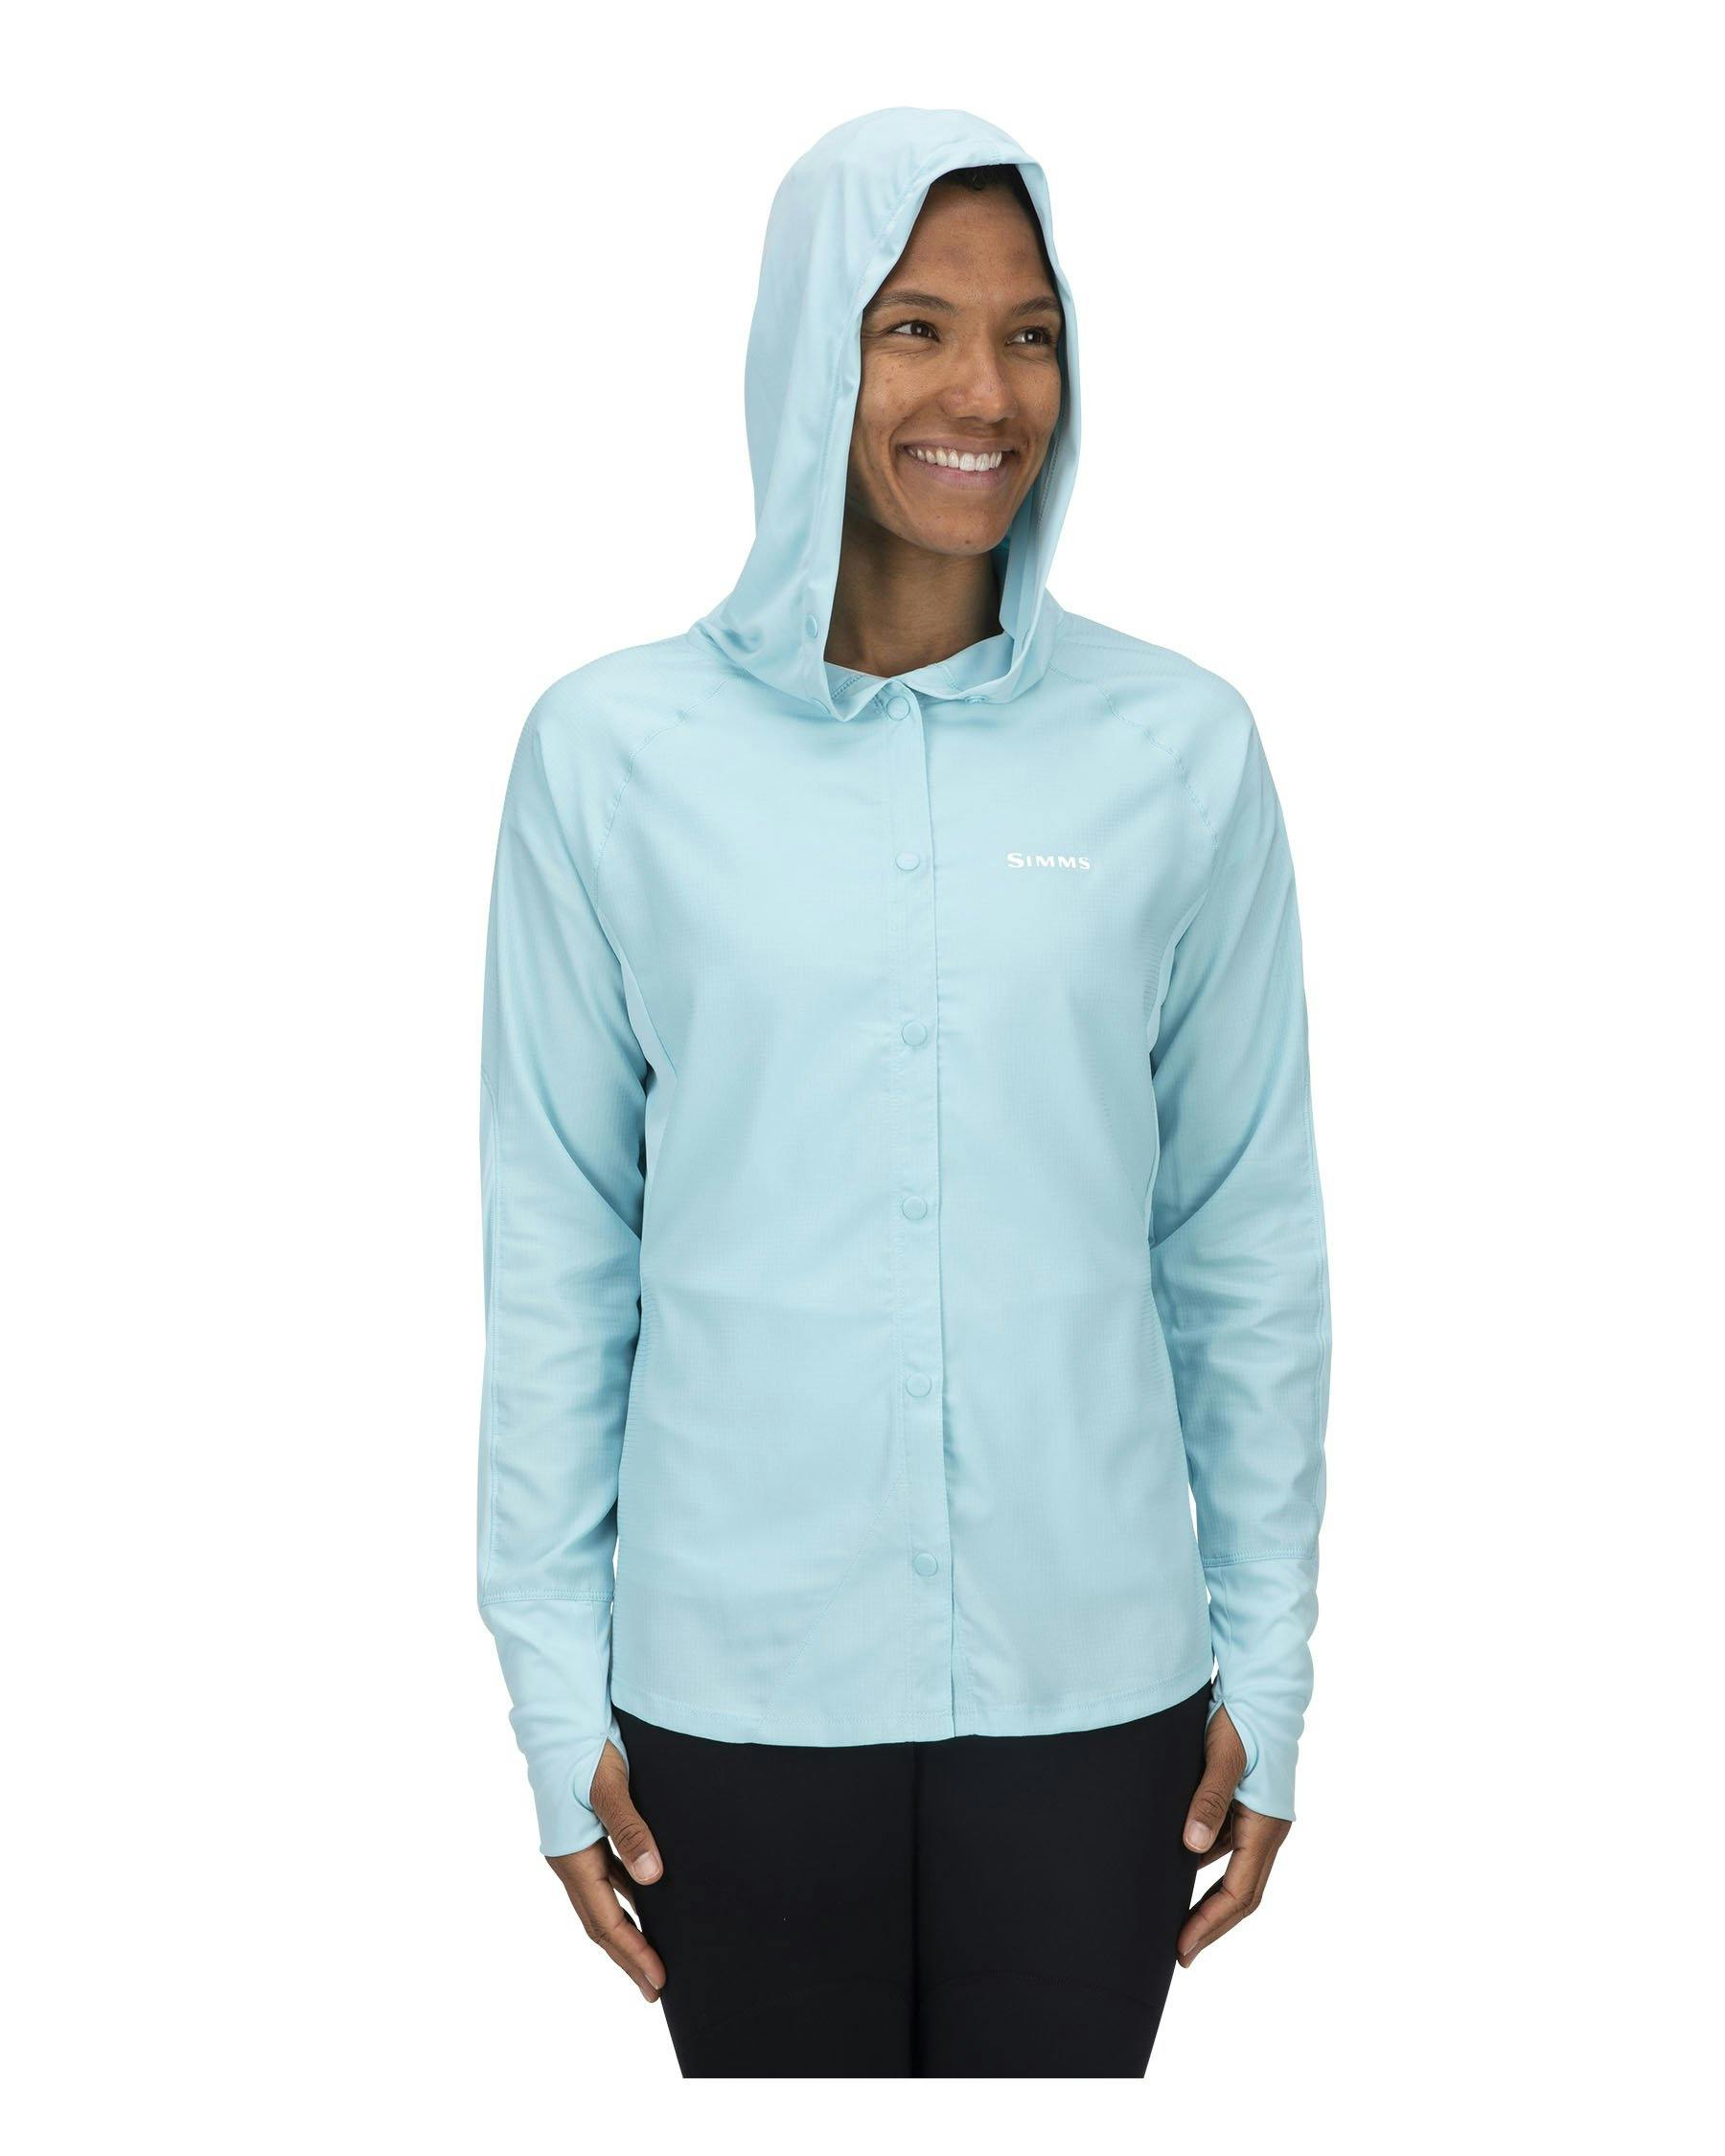 Simms Women's BiComp Long Sleeve Shirt